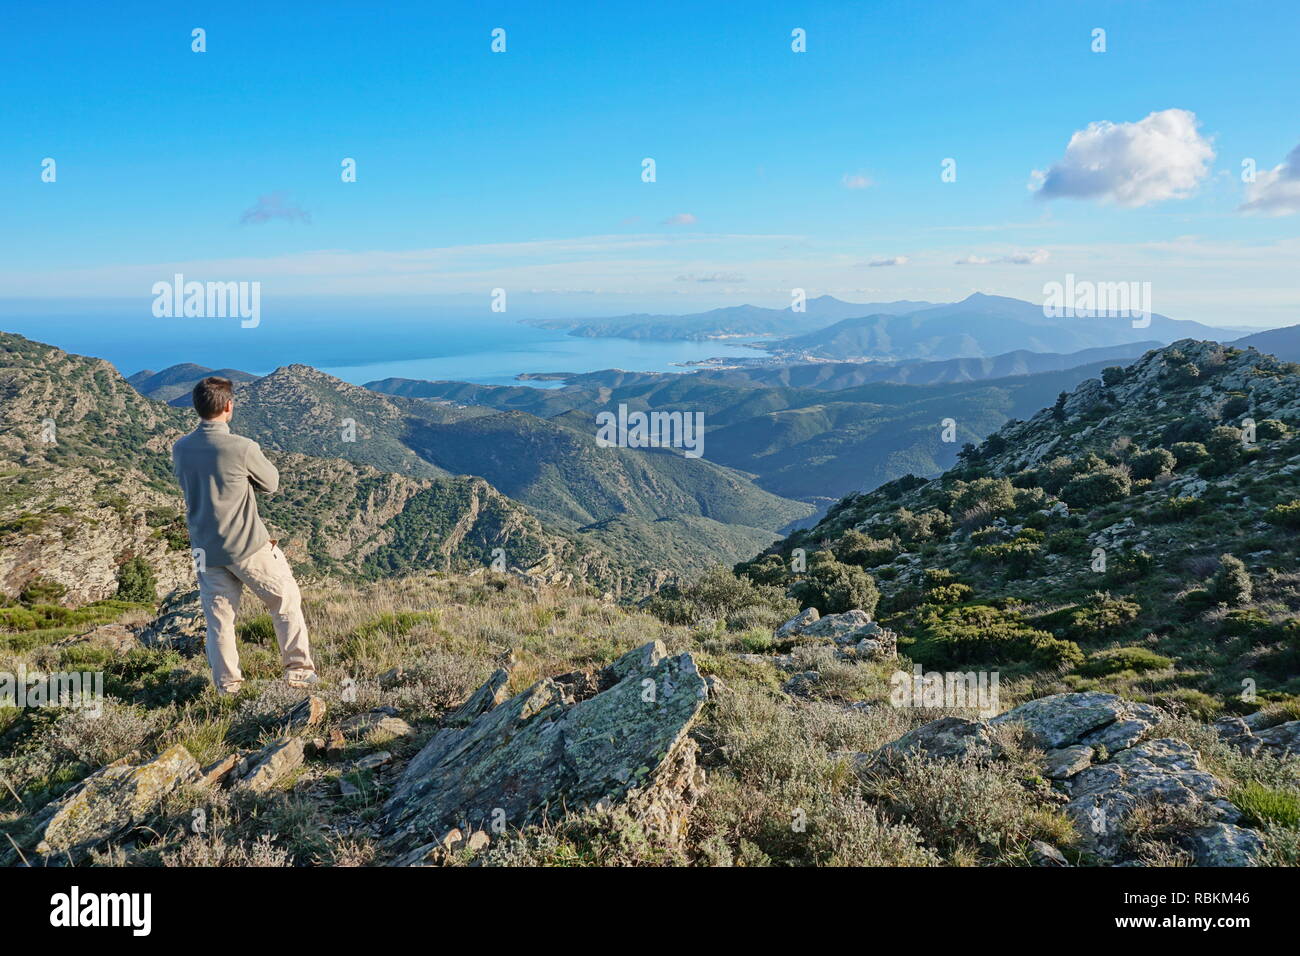 Paysage de l'Espagne un homme debout à la vue de l'Albera à montagne avec la mer Méditerranée et le Cap de Creus en arrière-plan, Pyrénées, Catalogne Banque D'Images